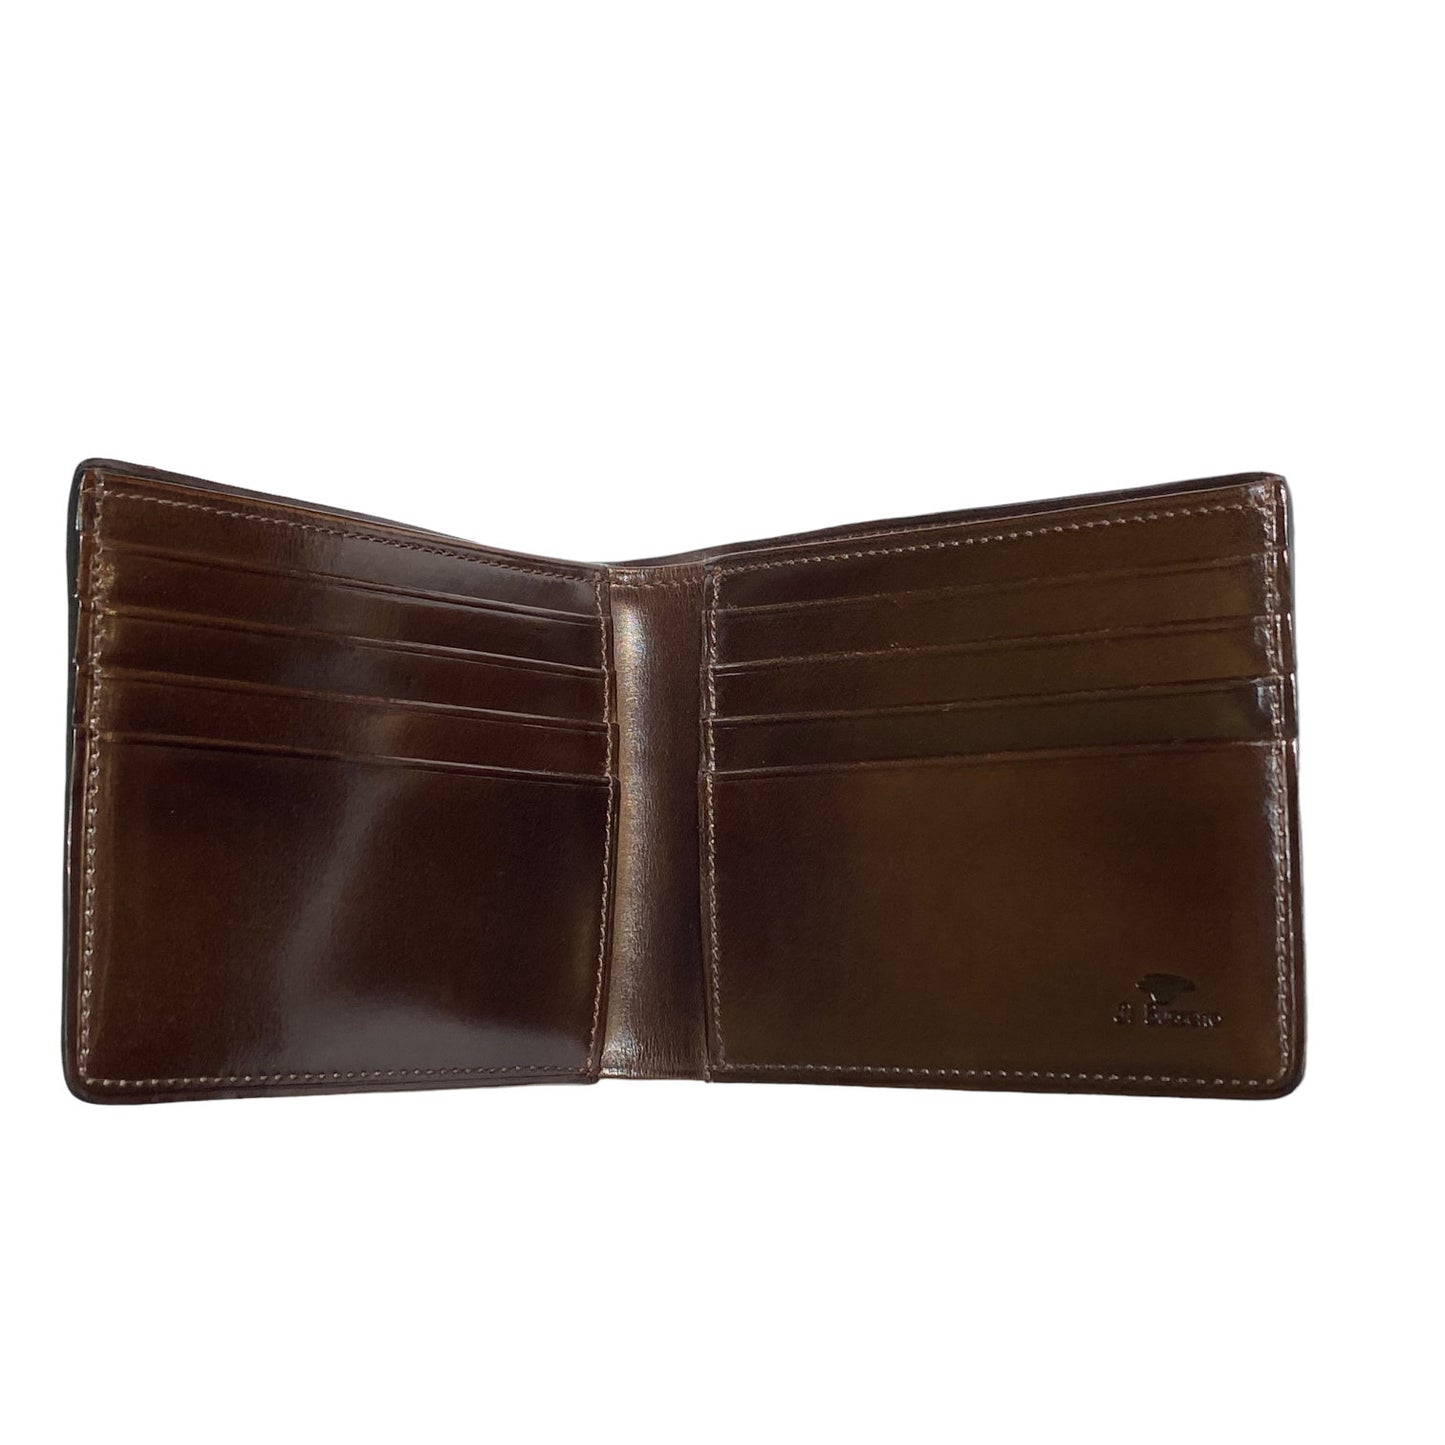 Bi-Fold Card Wallet, innen gefärbt – Braun